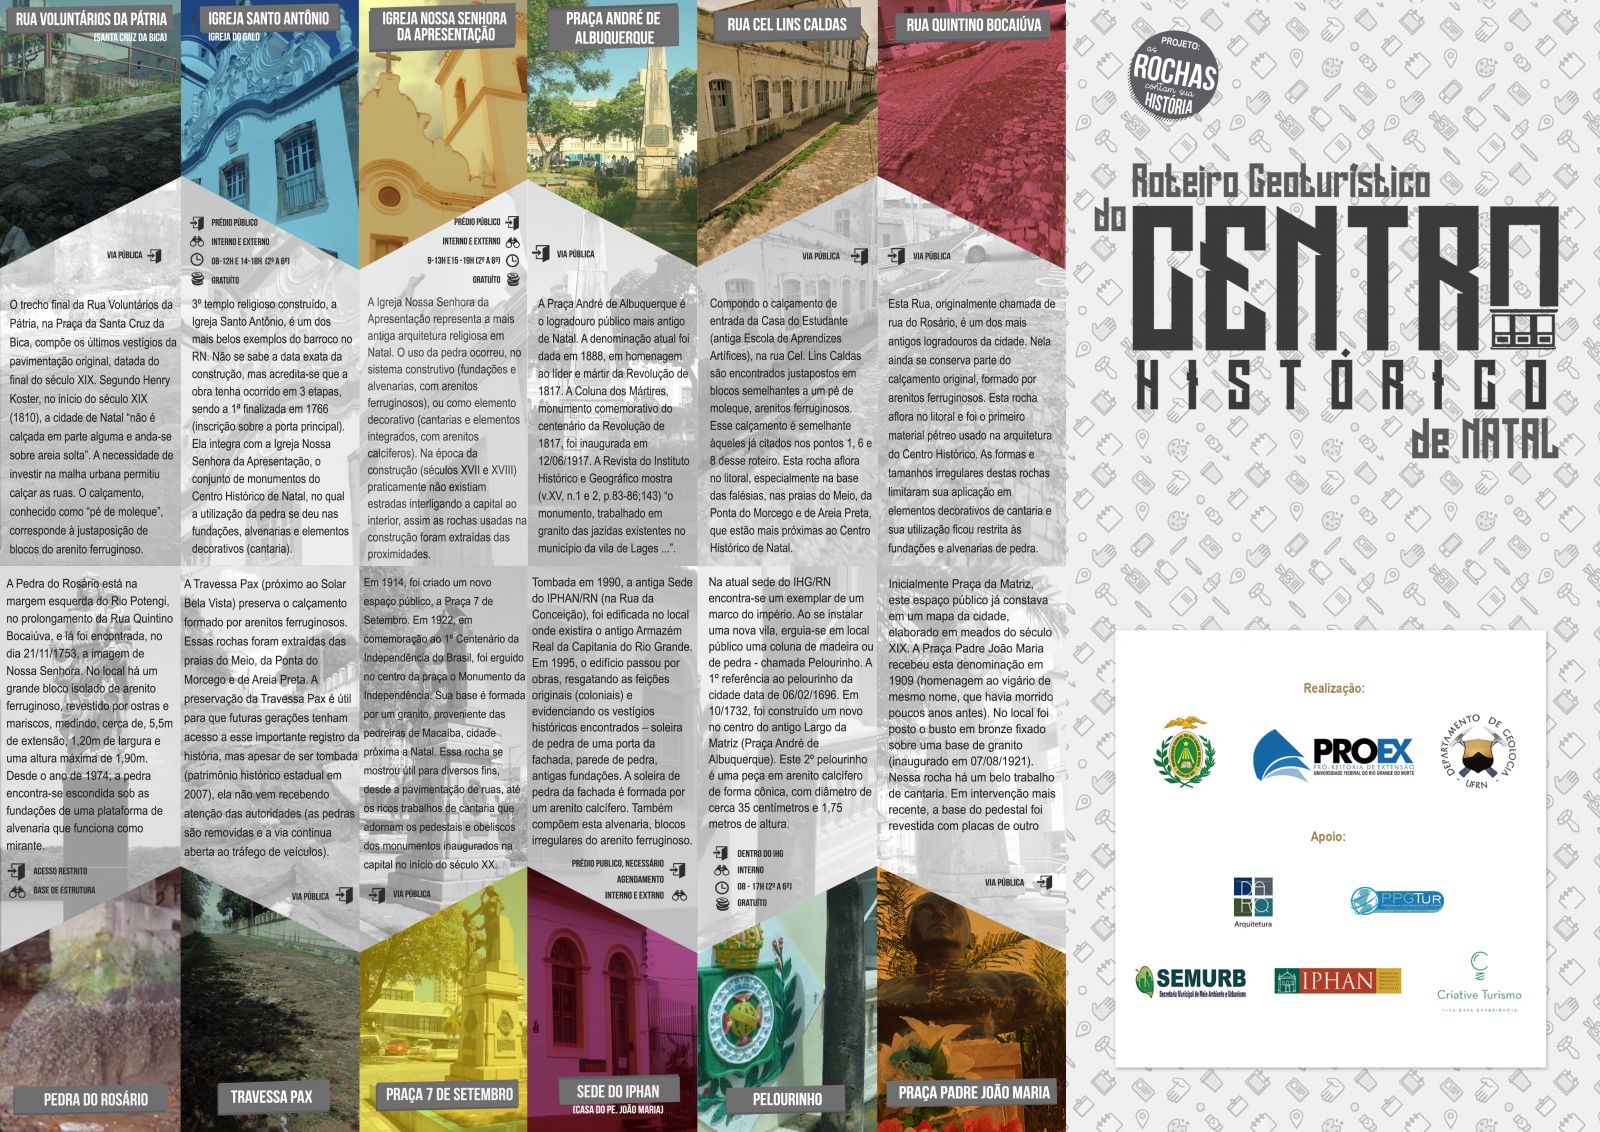 Notícia: Centro histórico de Natal (RN) ganha roteiro sobre diversidade  geológica - IPHAN - Instituto do Patrimônio Histórico e Artístico Nacional